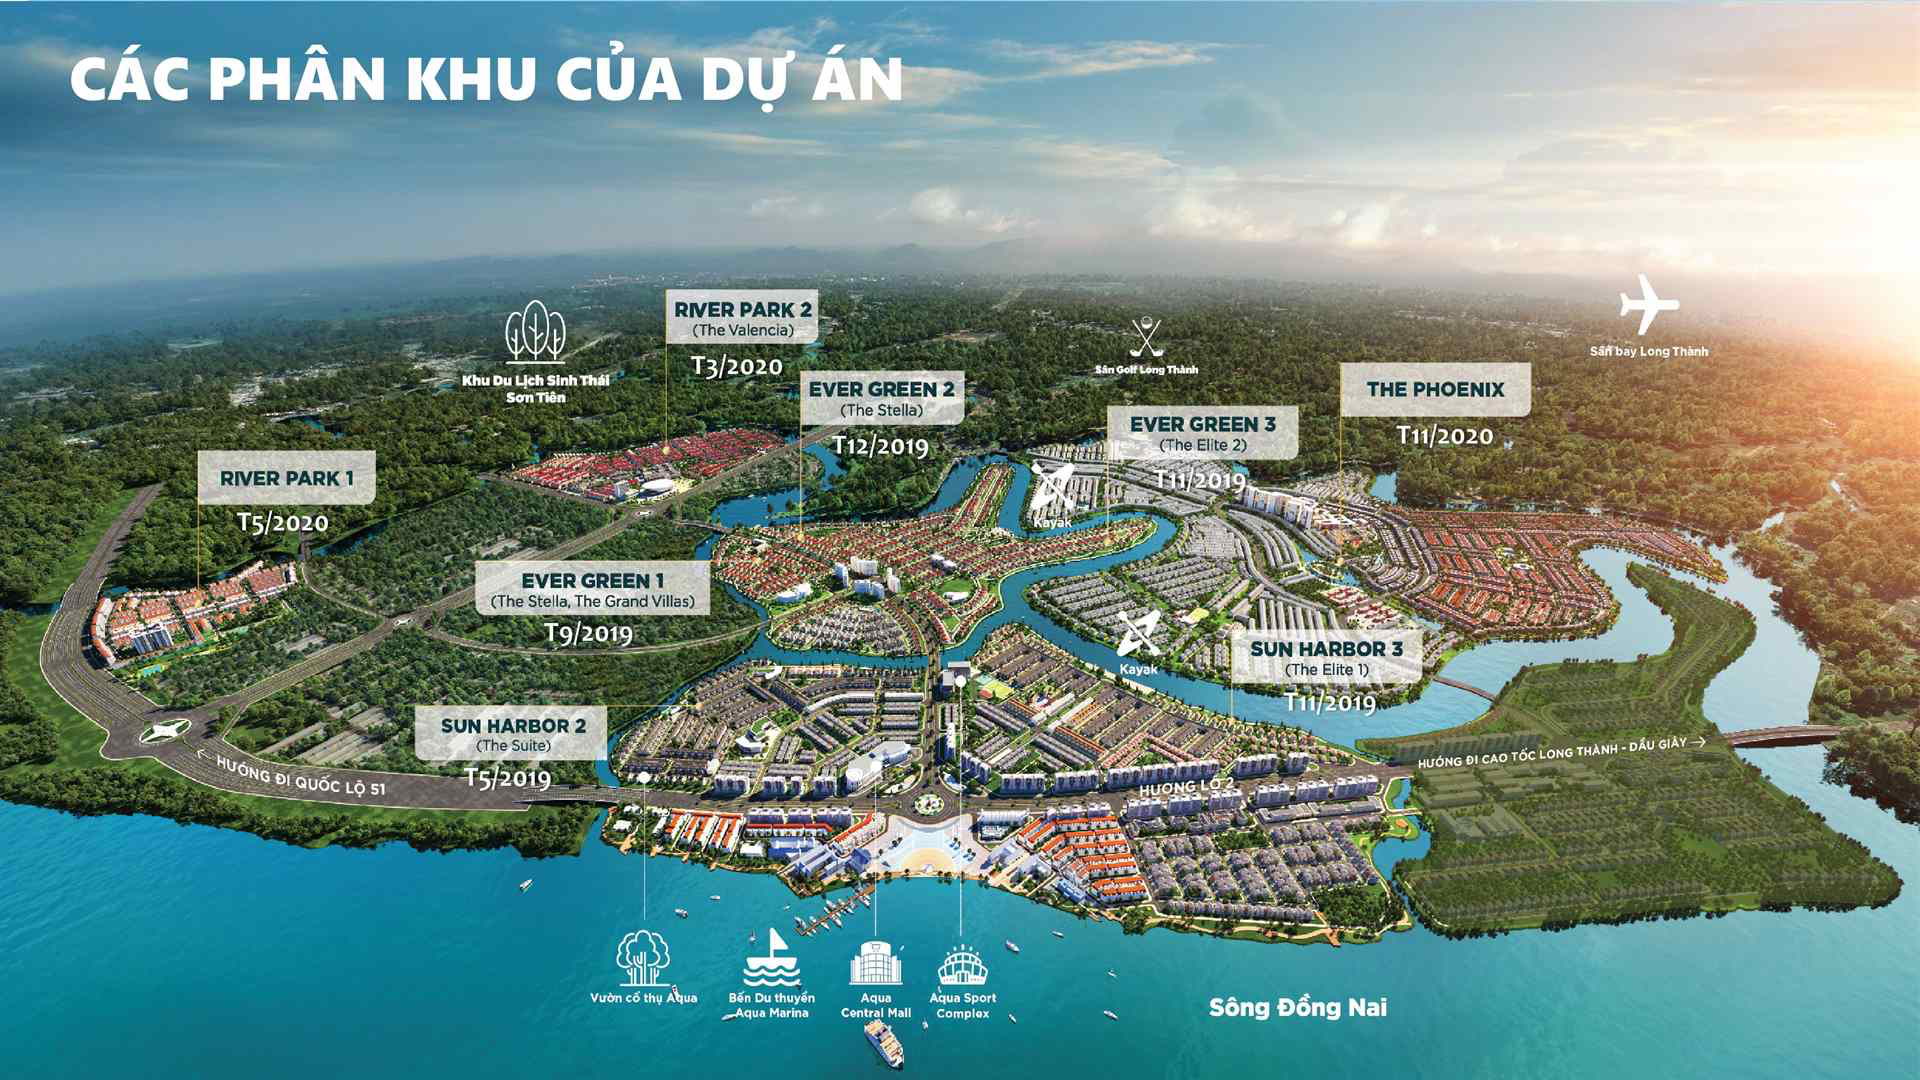 Chính sách bán hàng Aqua City đảo Phượng Hoàng cập nhật